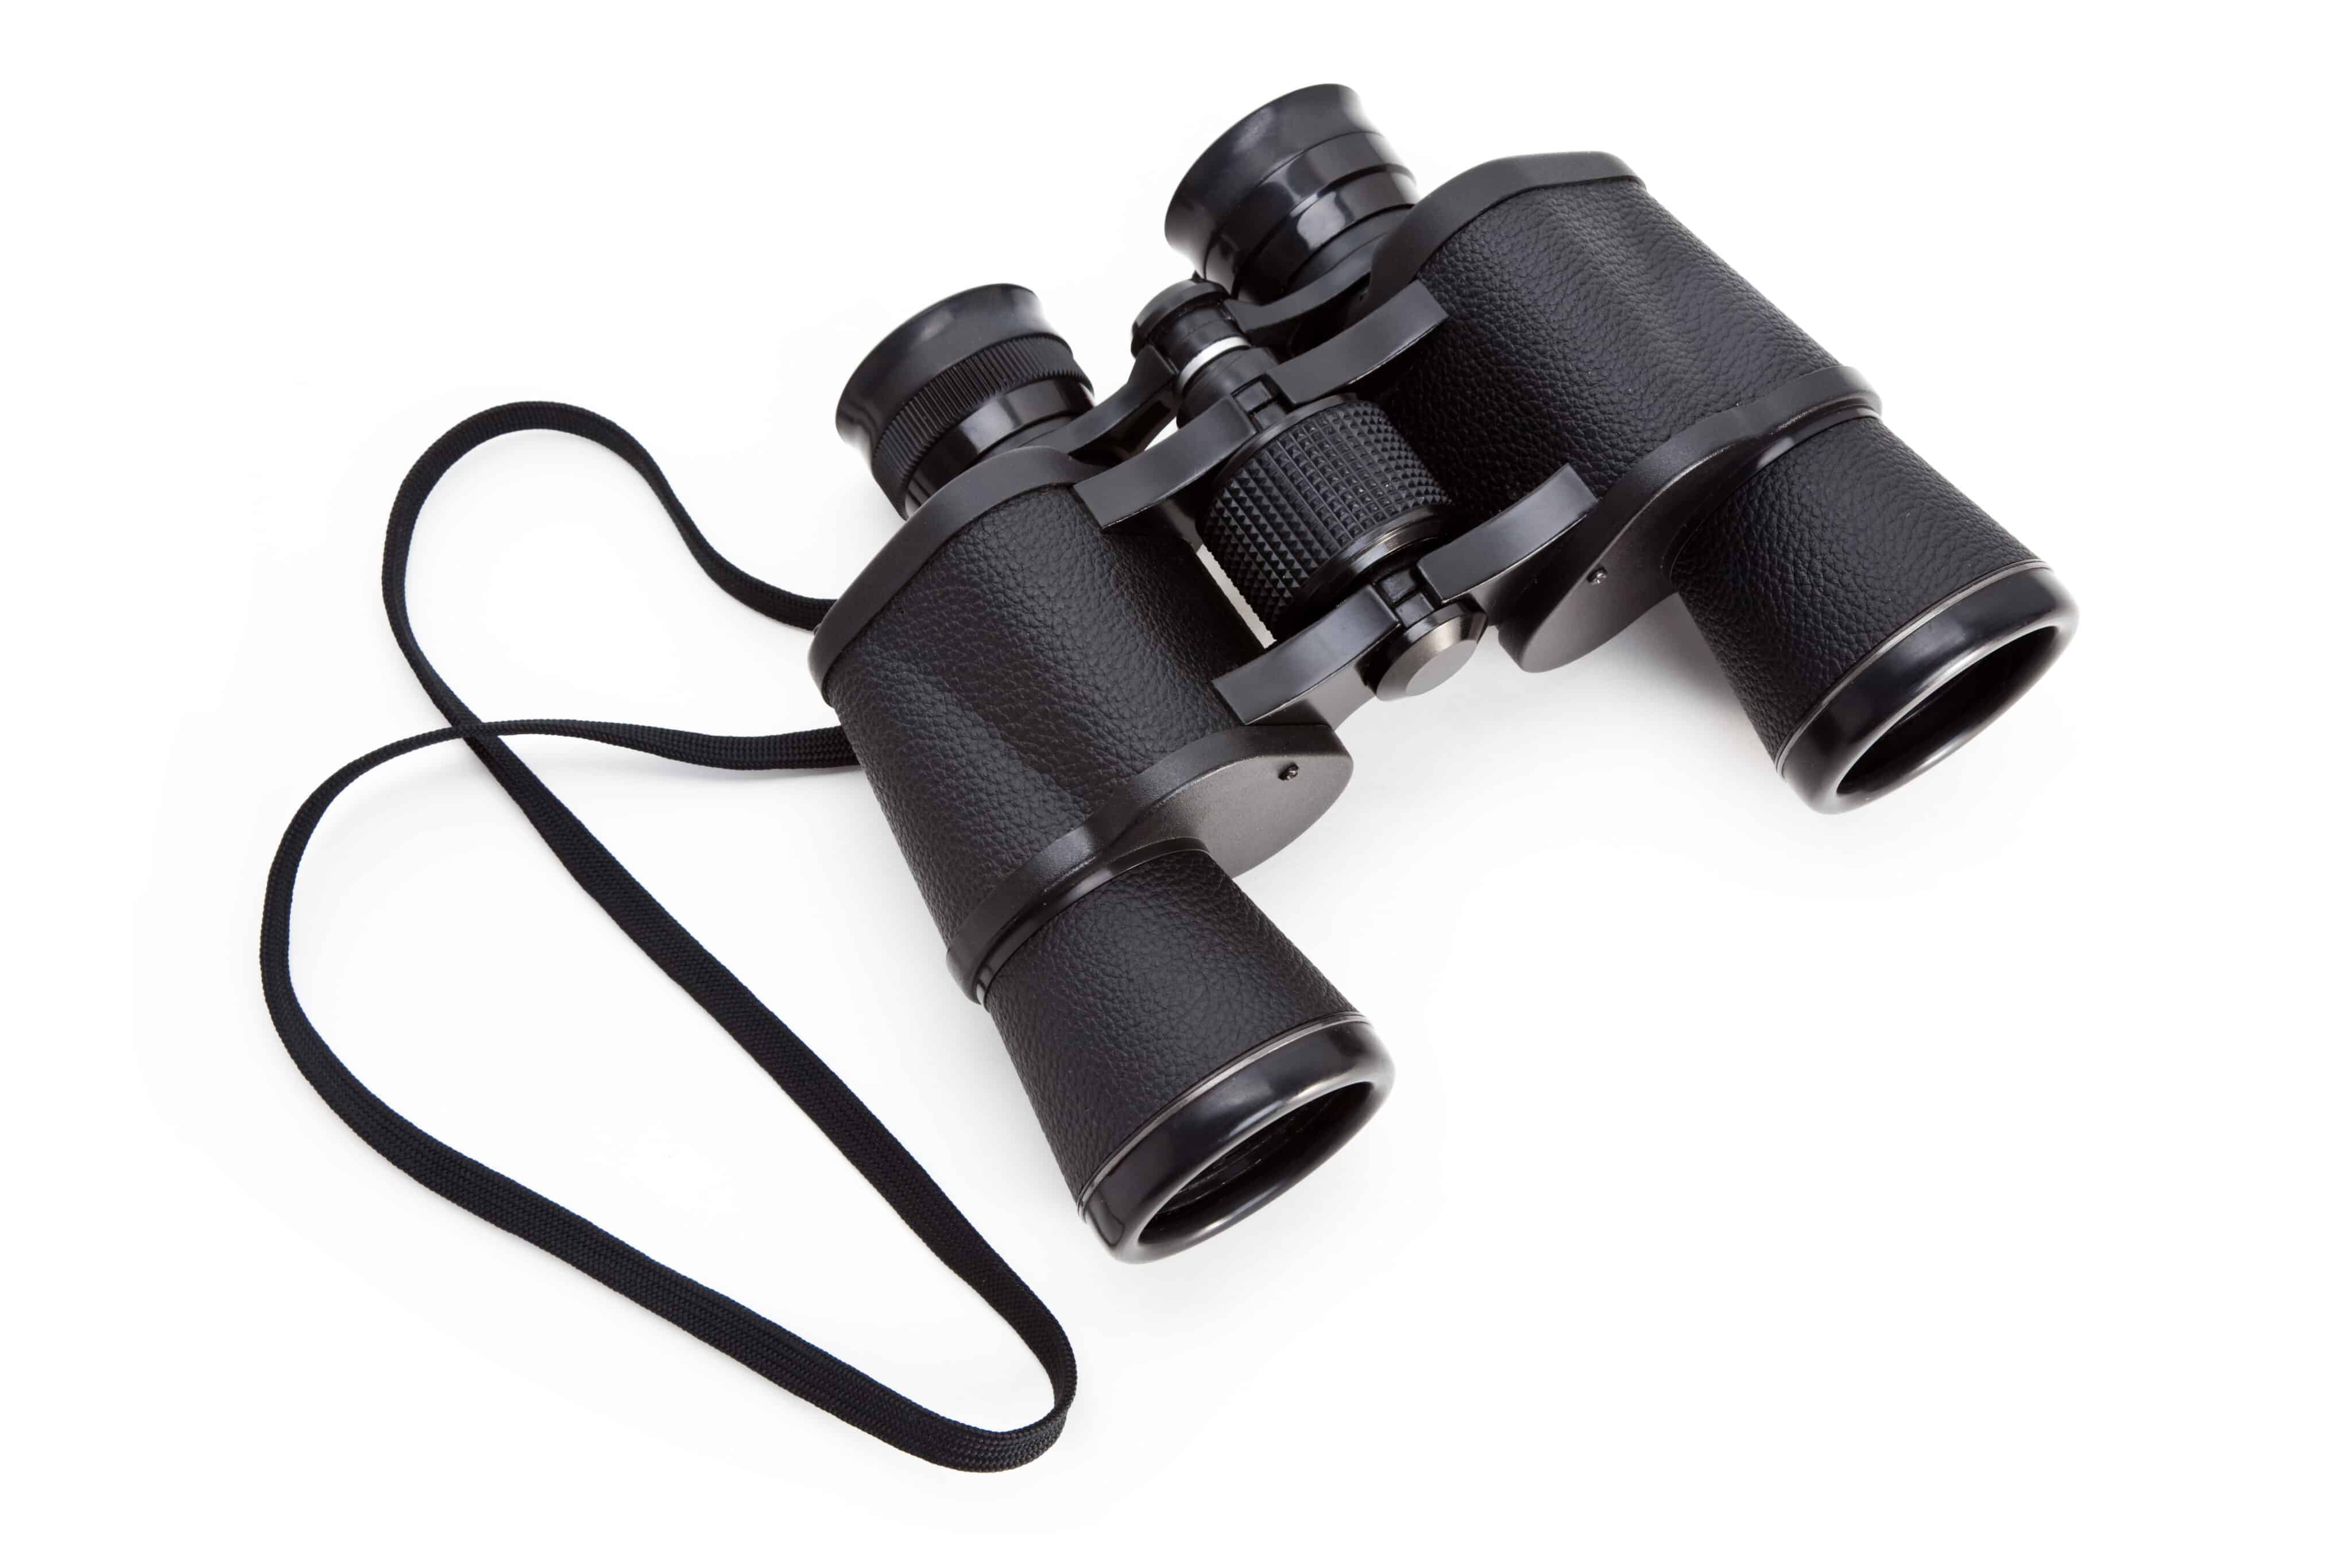 12x25 binoculars